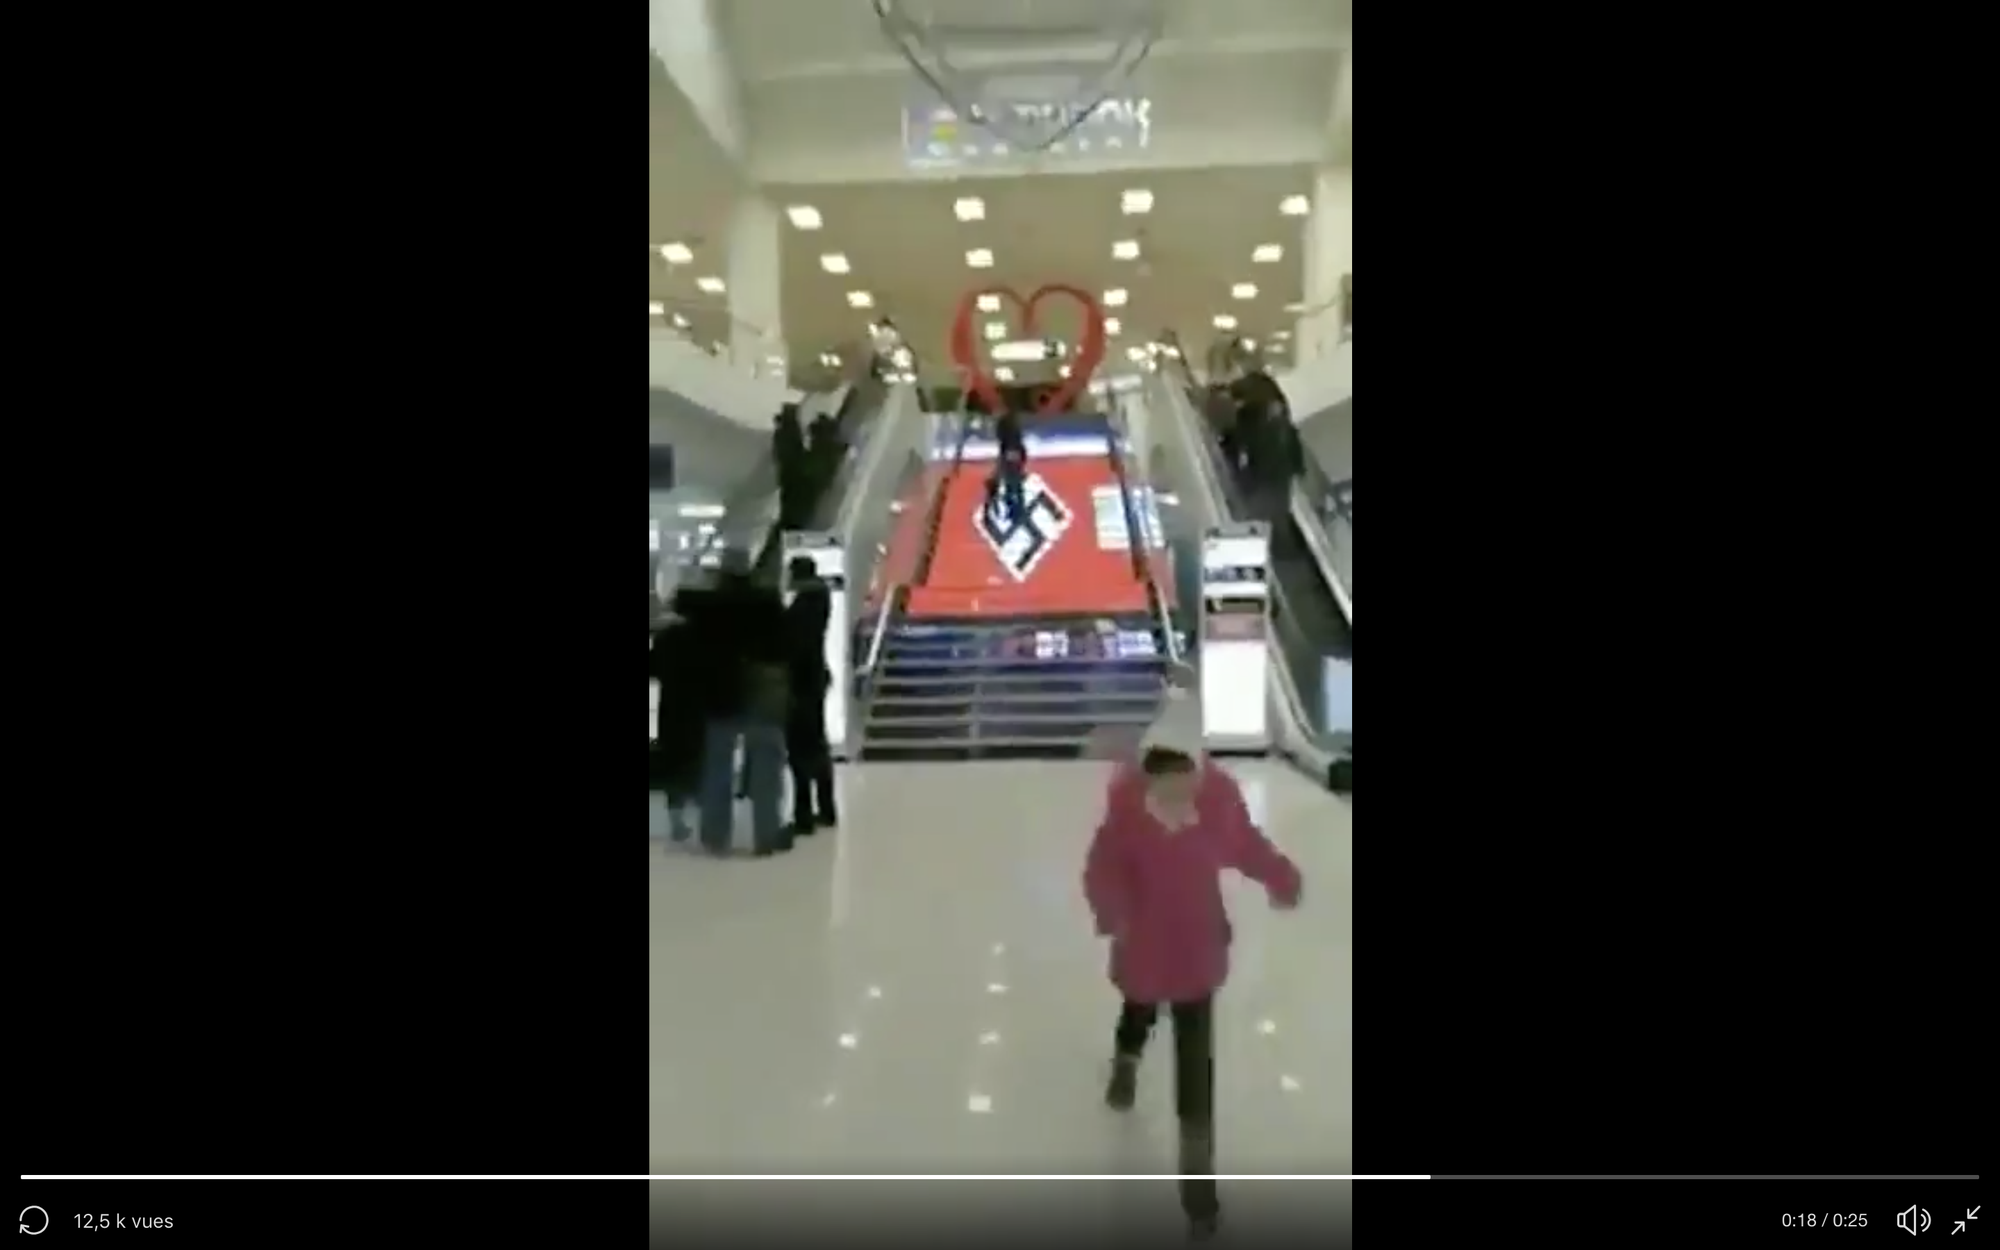 Un drapeau nazi a-t-il été affiché dans un centre commercial ukrainien? –  Libération